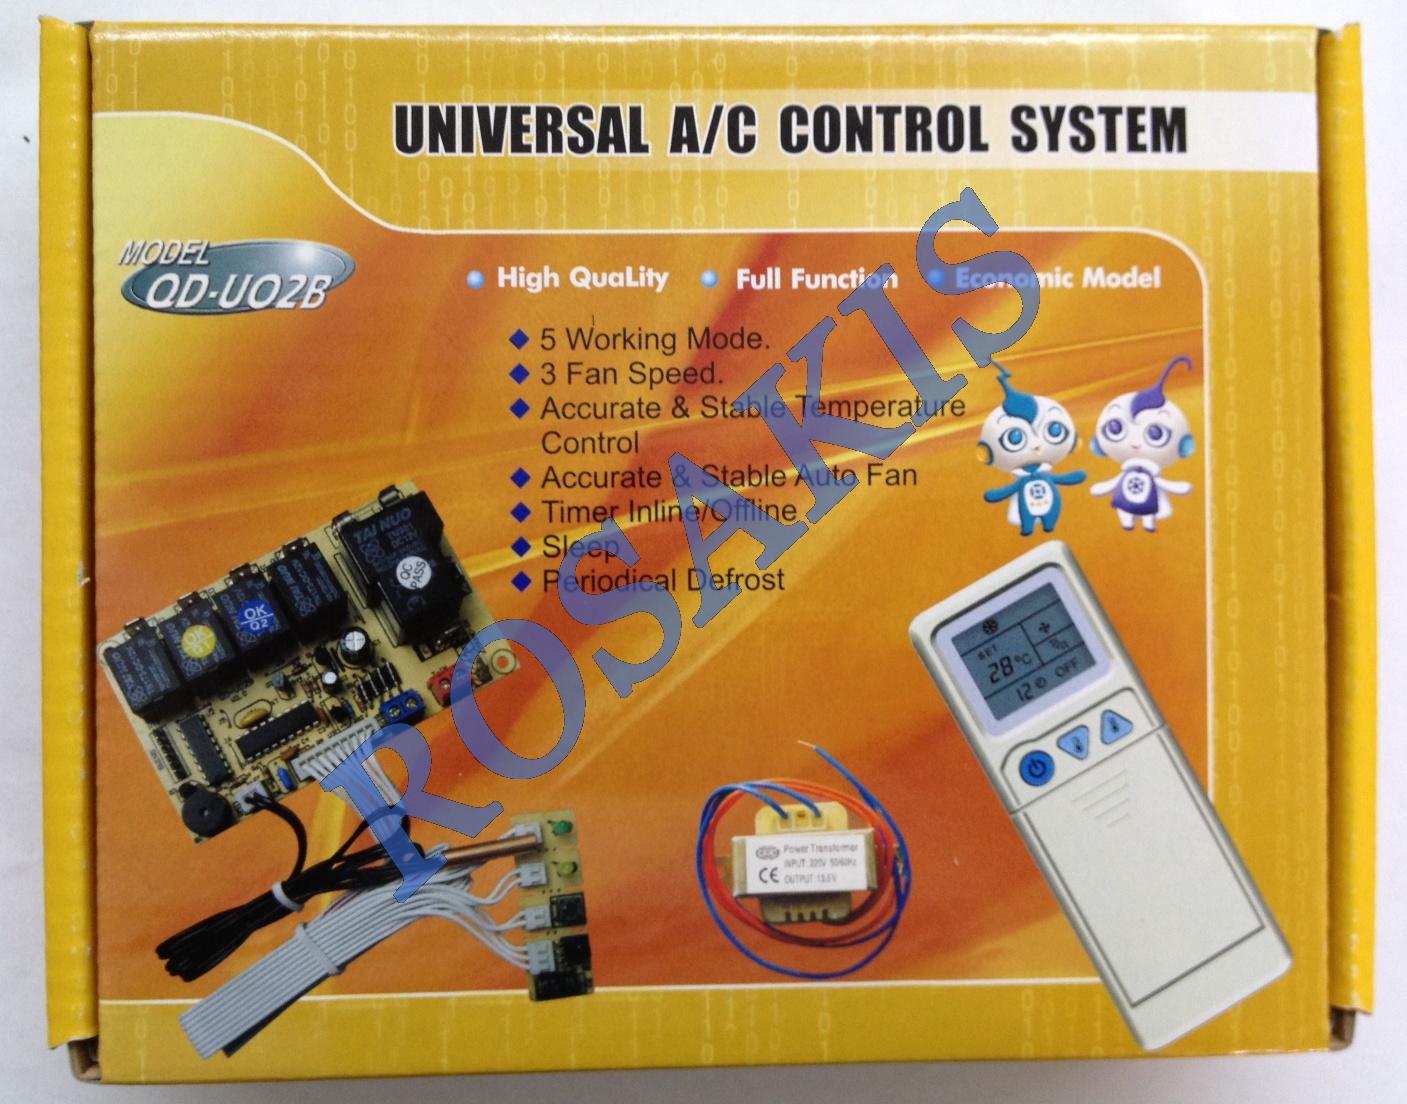 CONTROL SYSTEM A/C UNIVERSAL 3 FAN SPEED QD-U02B